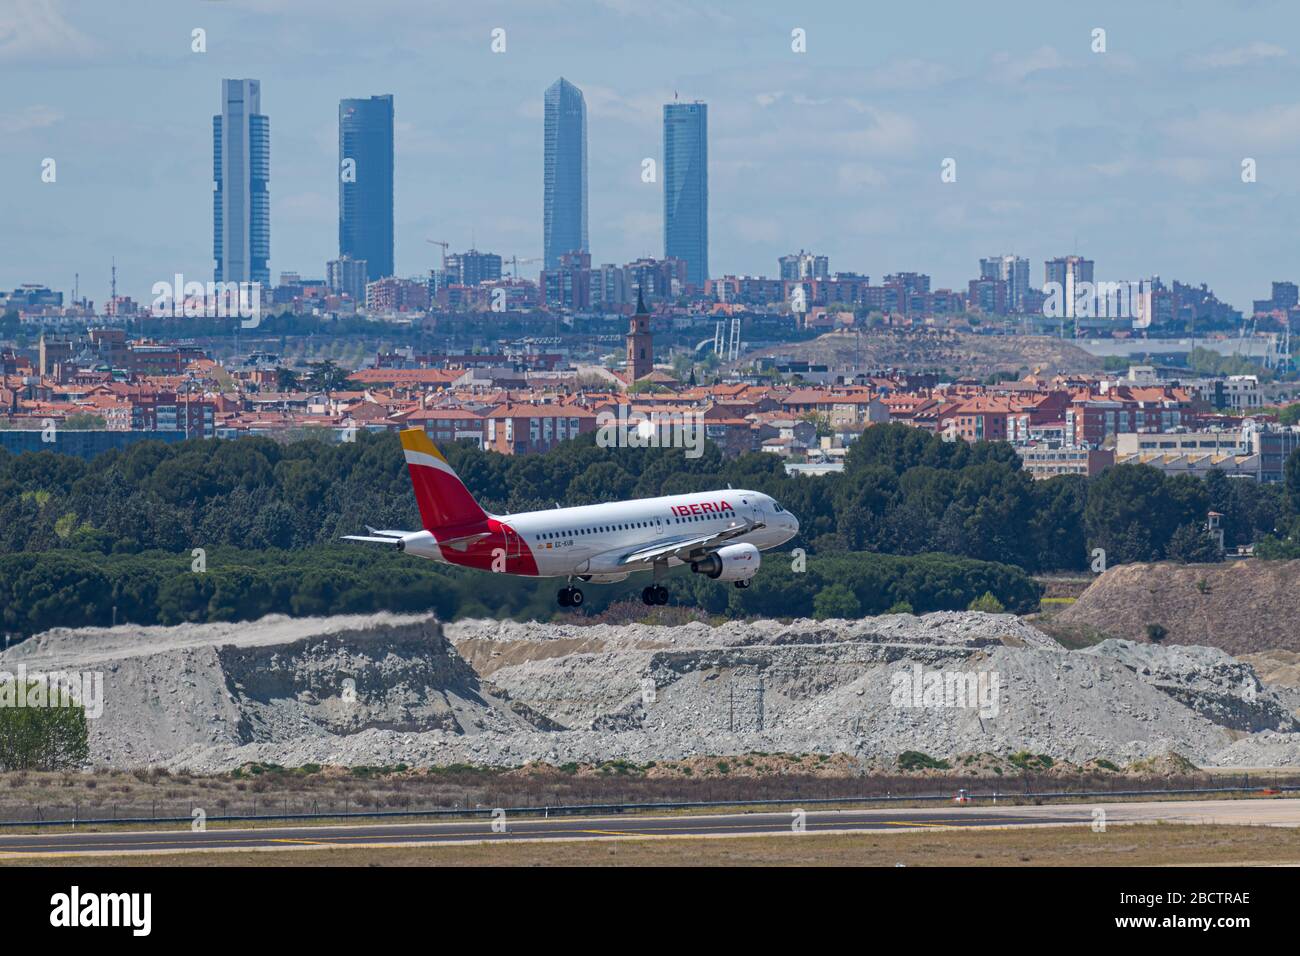 MADRID, SPAGNA - 14 APRILE 2019: Iberia Airlines Airbus A319 aereo passeggeri in atterraggio all'aeroporto internazionale di Madrid-Barajas Adolfo Suarez in arretrato Foto Stock